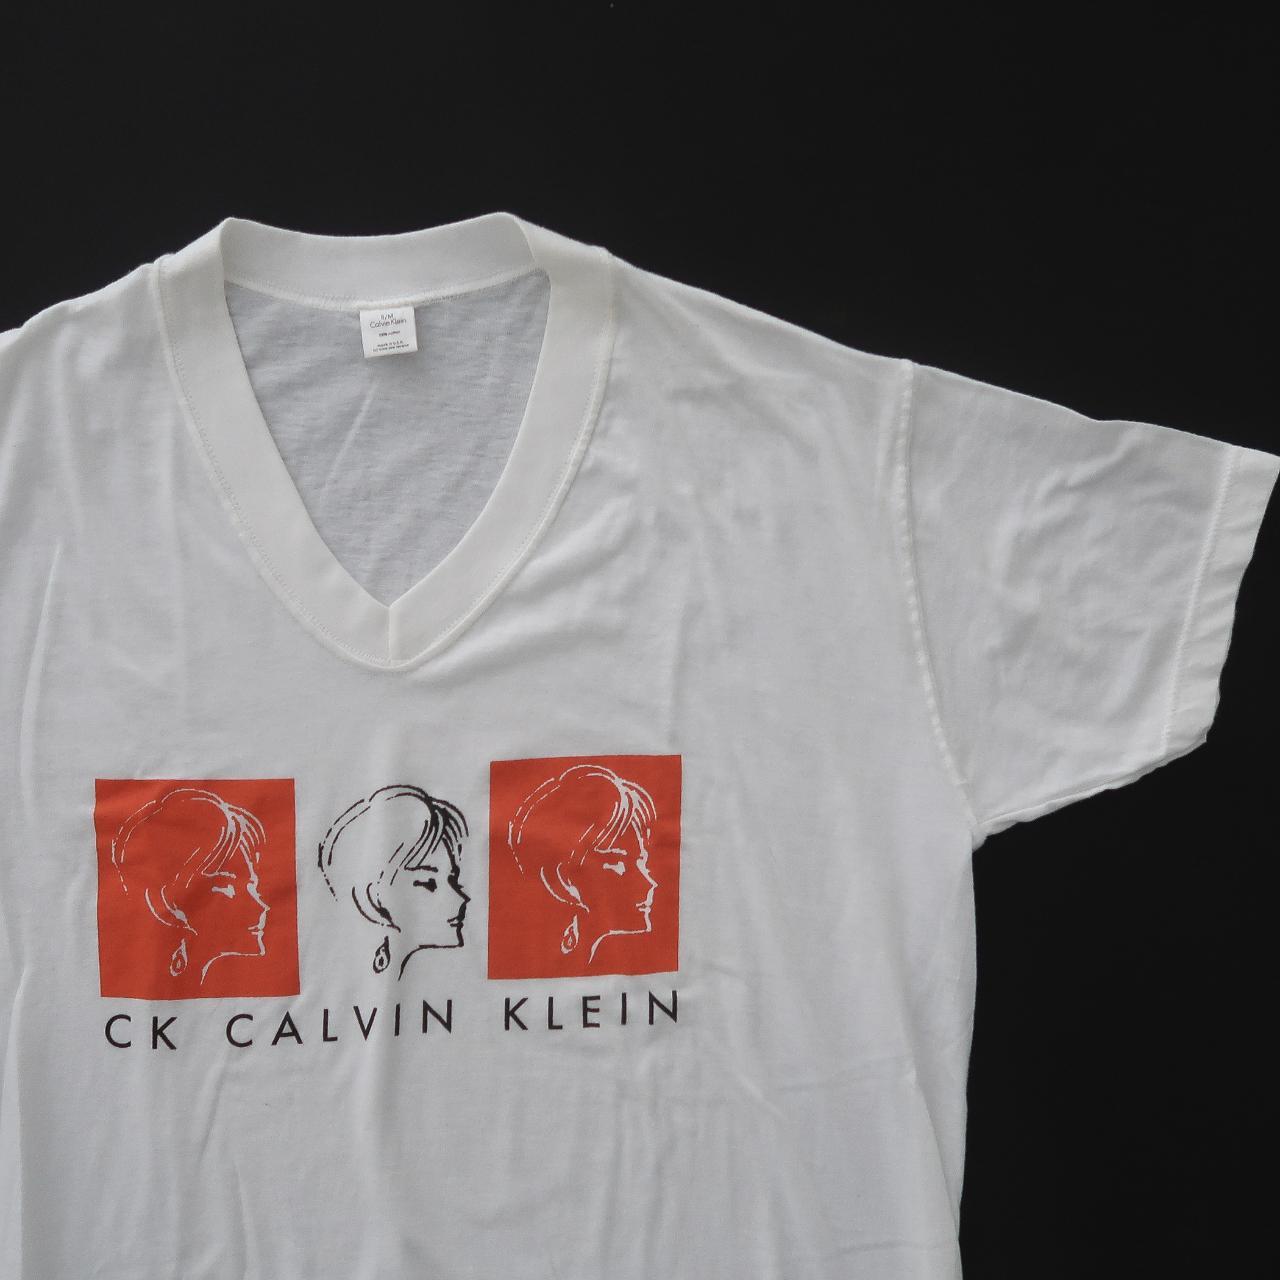 Vintage 90s Calvin Klein retro sleep shirt. Rad... - Depop